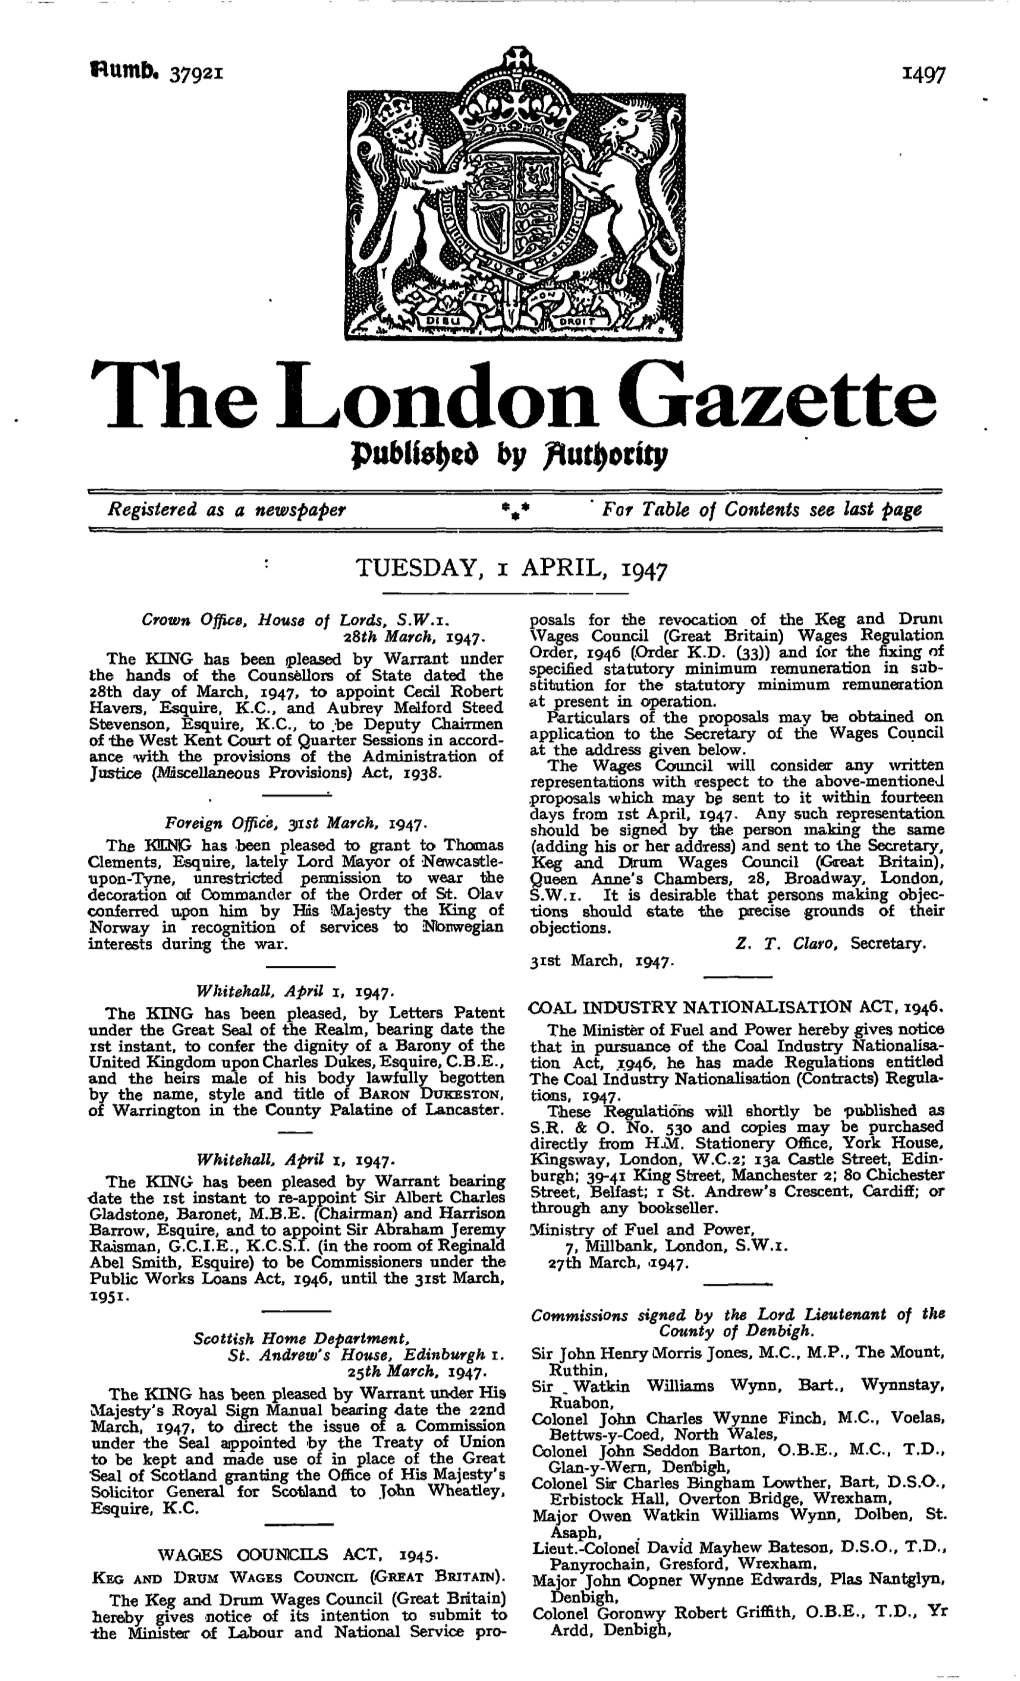 The London Gazette By